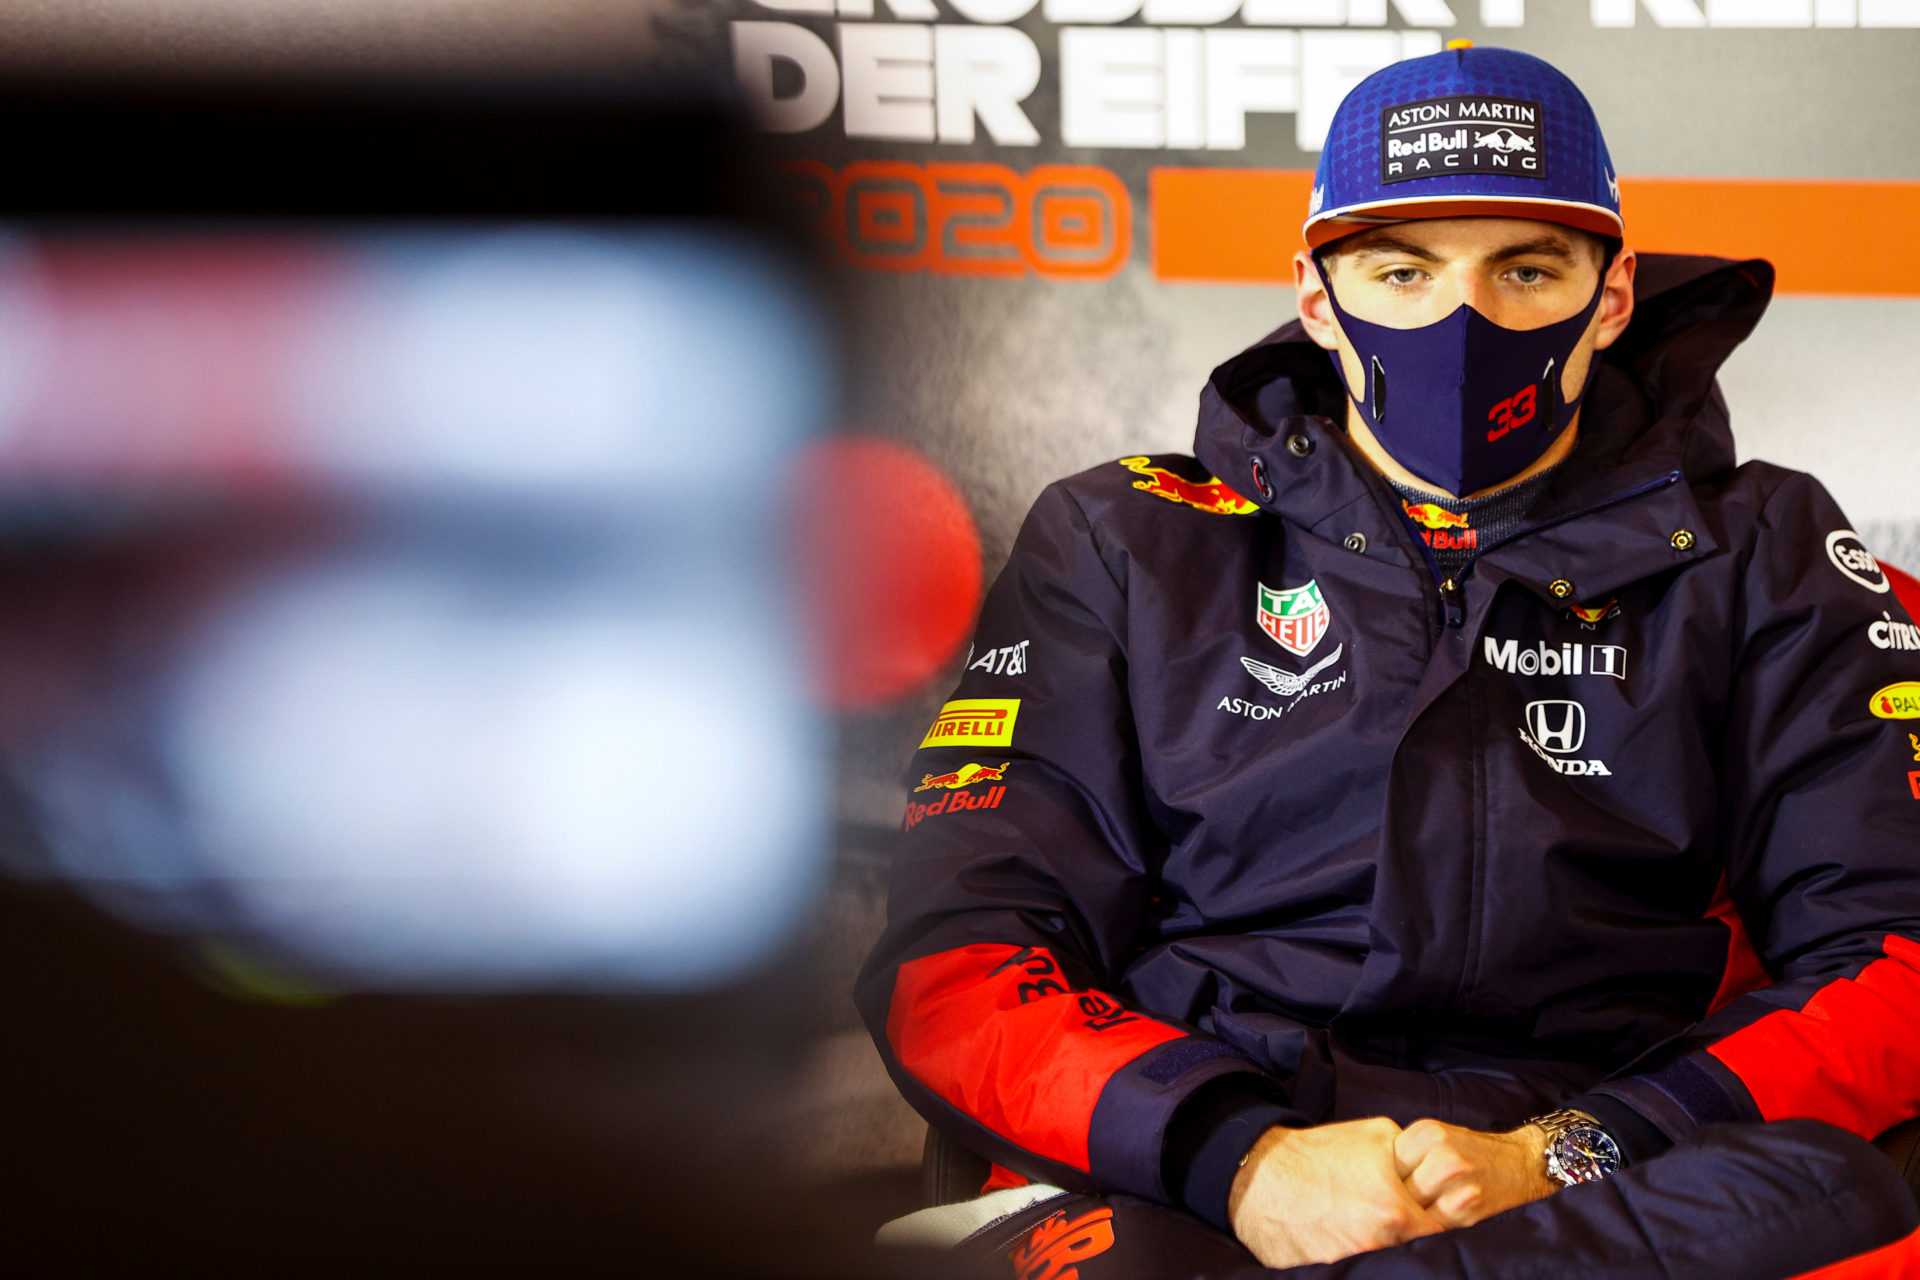 REGARDER: La réaction de Max Verstappen à un journo le qualifiant de "Damager de carrière" chez Red Bull